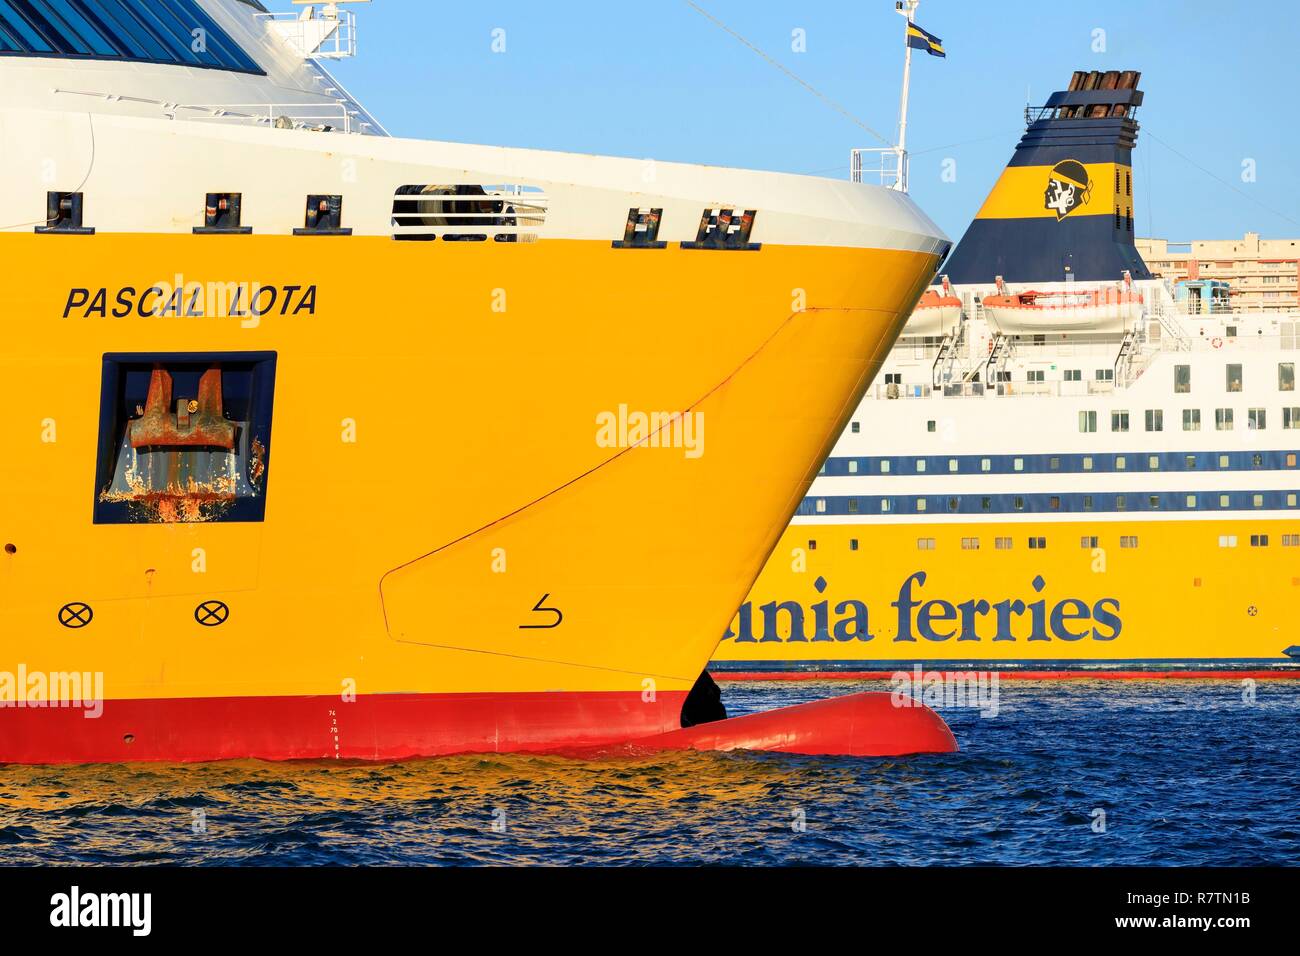 La France, Var, port de Toulon, bateaux de Corsica Ferries Photo Stock